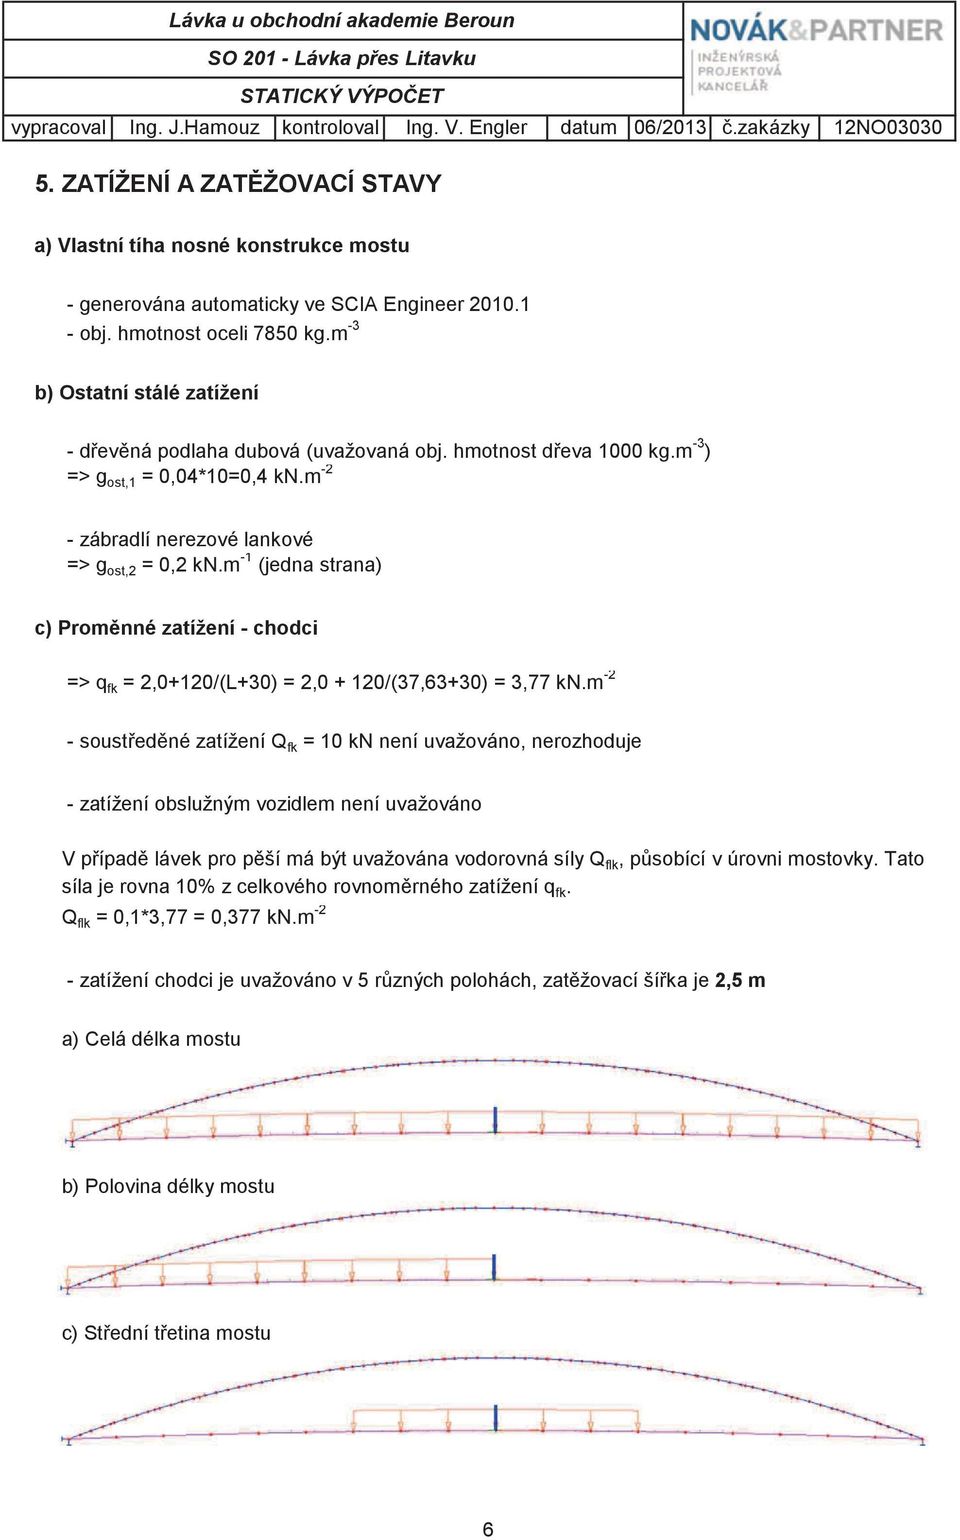 m -3 b) Ostatní stálé zatížení - devná podlaha dubová (uvažovaná obj. hmotnost deva 1000 kg.m -3 ) => g ost,1 = 0,04*10=0,4 kn.m -2 - zábradlí nerezové lankové => g ost,2 = 0,2 kn.